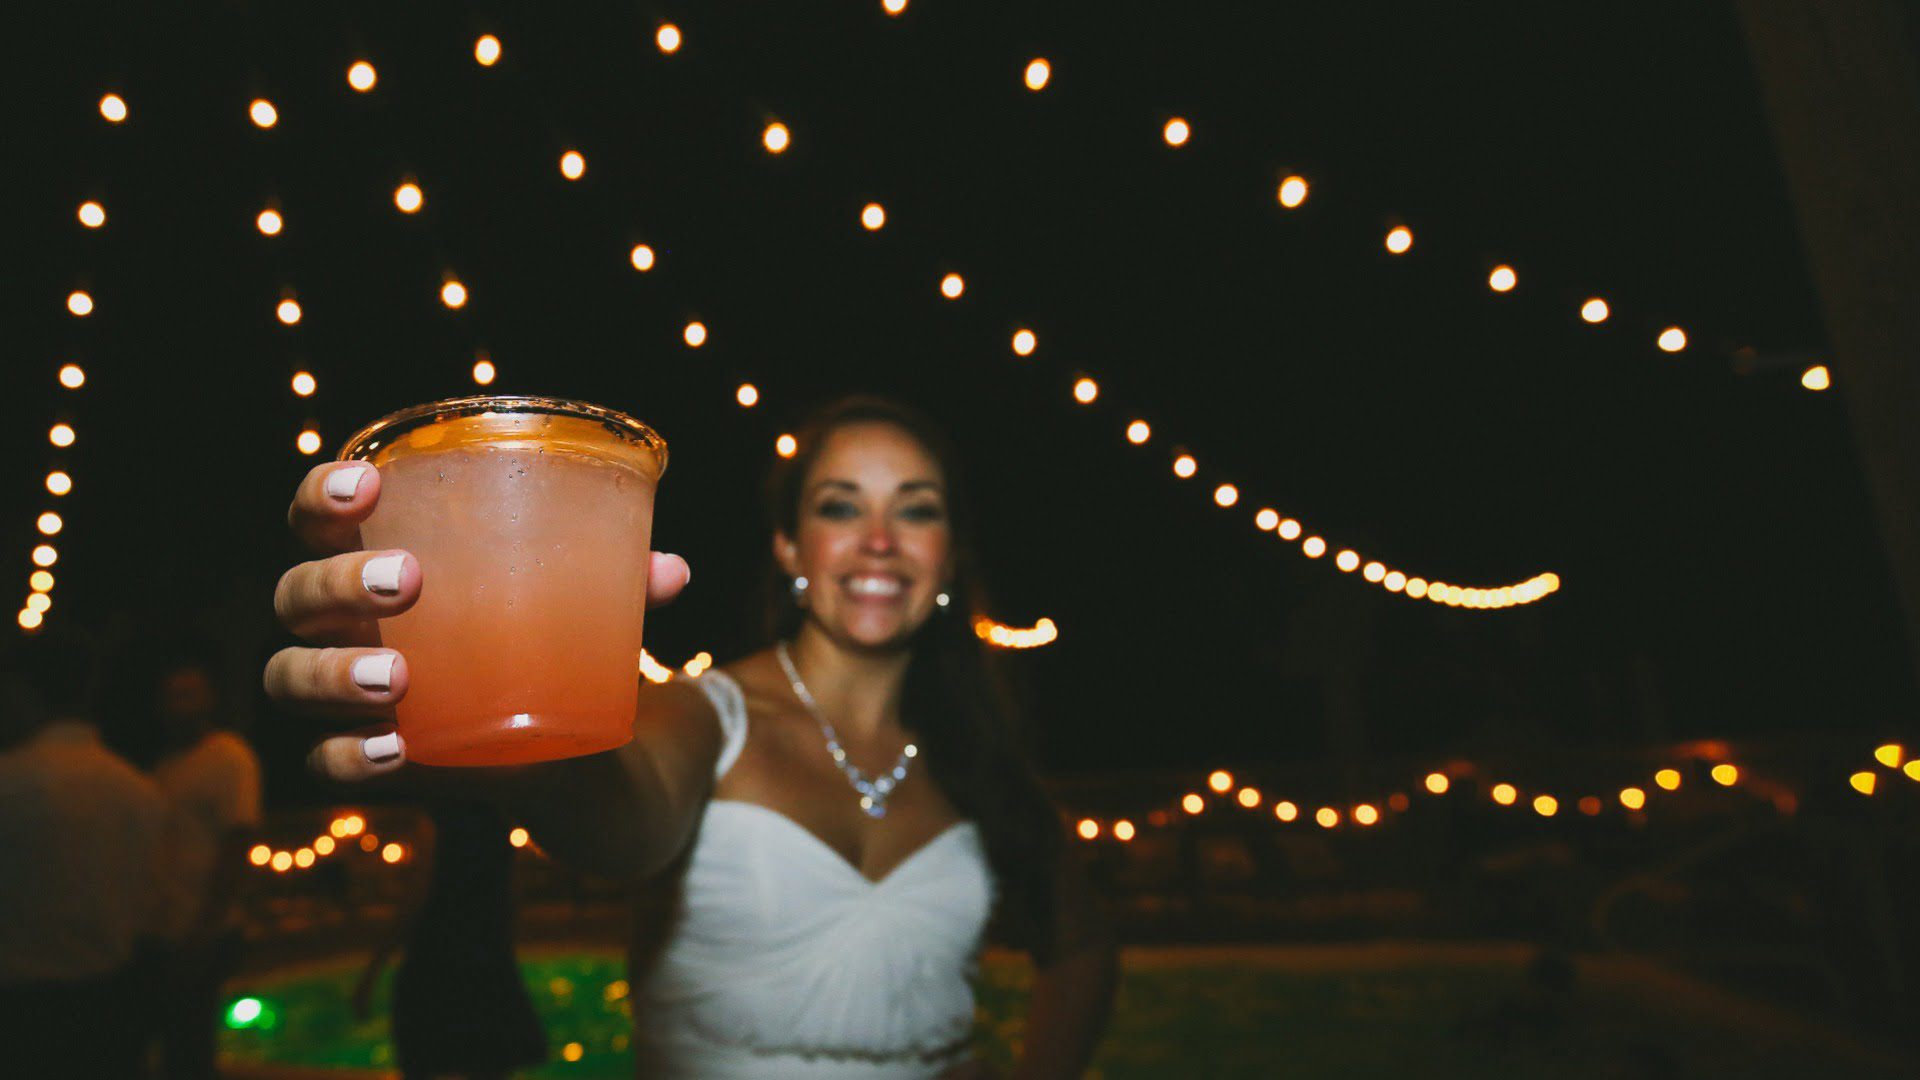 Wilmington uplighting outdoor wedding reception lighting